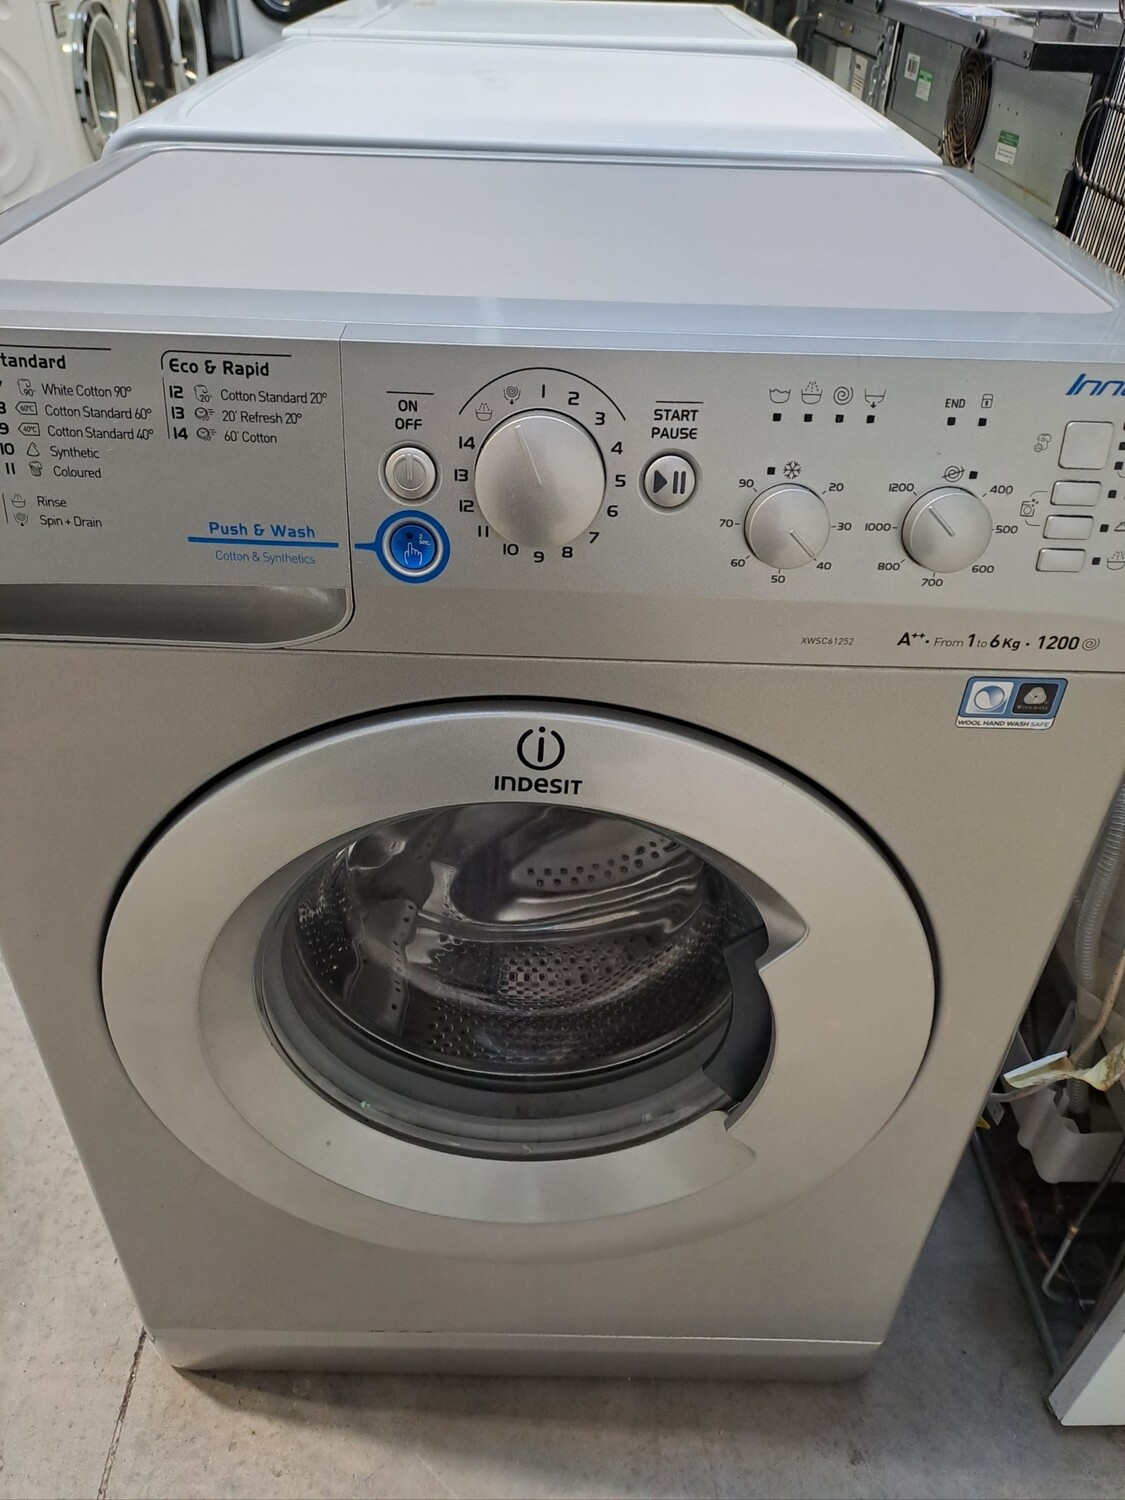 Indesit XWSC61252SUK 6kg Load 1200 Spin Washing Machine Washing Machine Slim Depth - Silver - Refurbished - 6 Month Guarantee